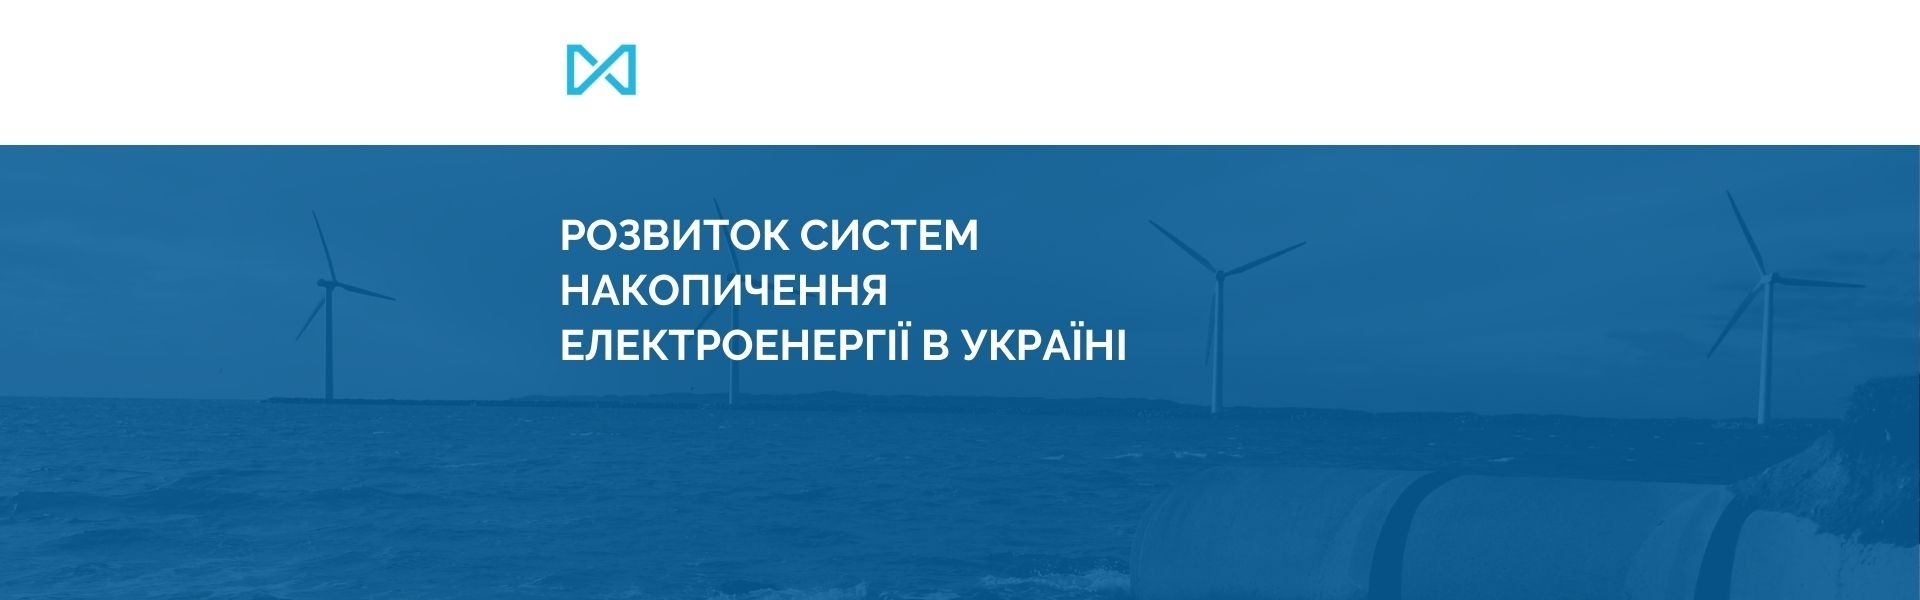 Розвиток систем накопичення електроенергії в Україні